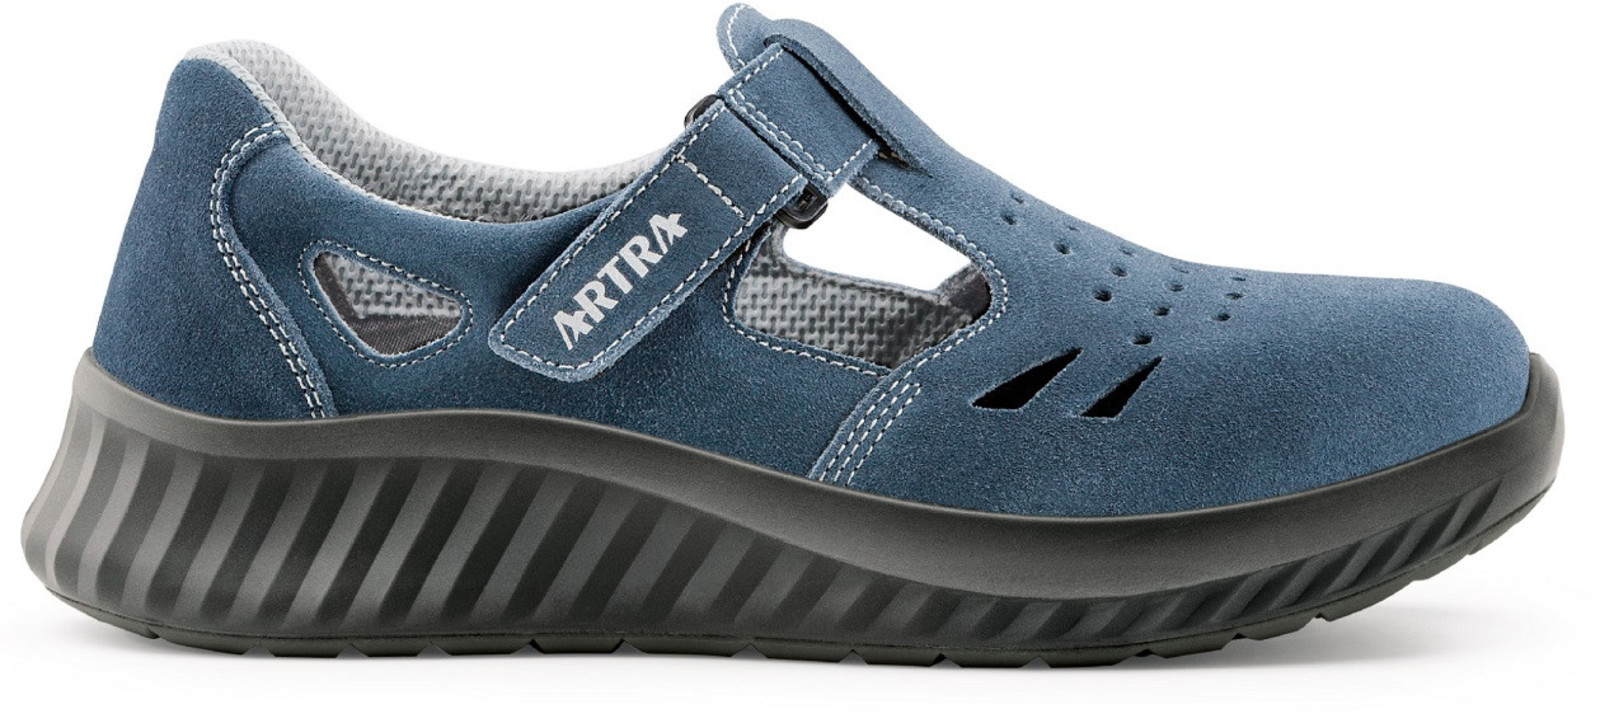 Bezpečnostné sandále Artra Armen 9007 9360 S1 - veľkosť: 45, farba: modrá